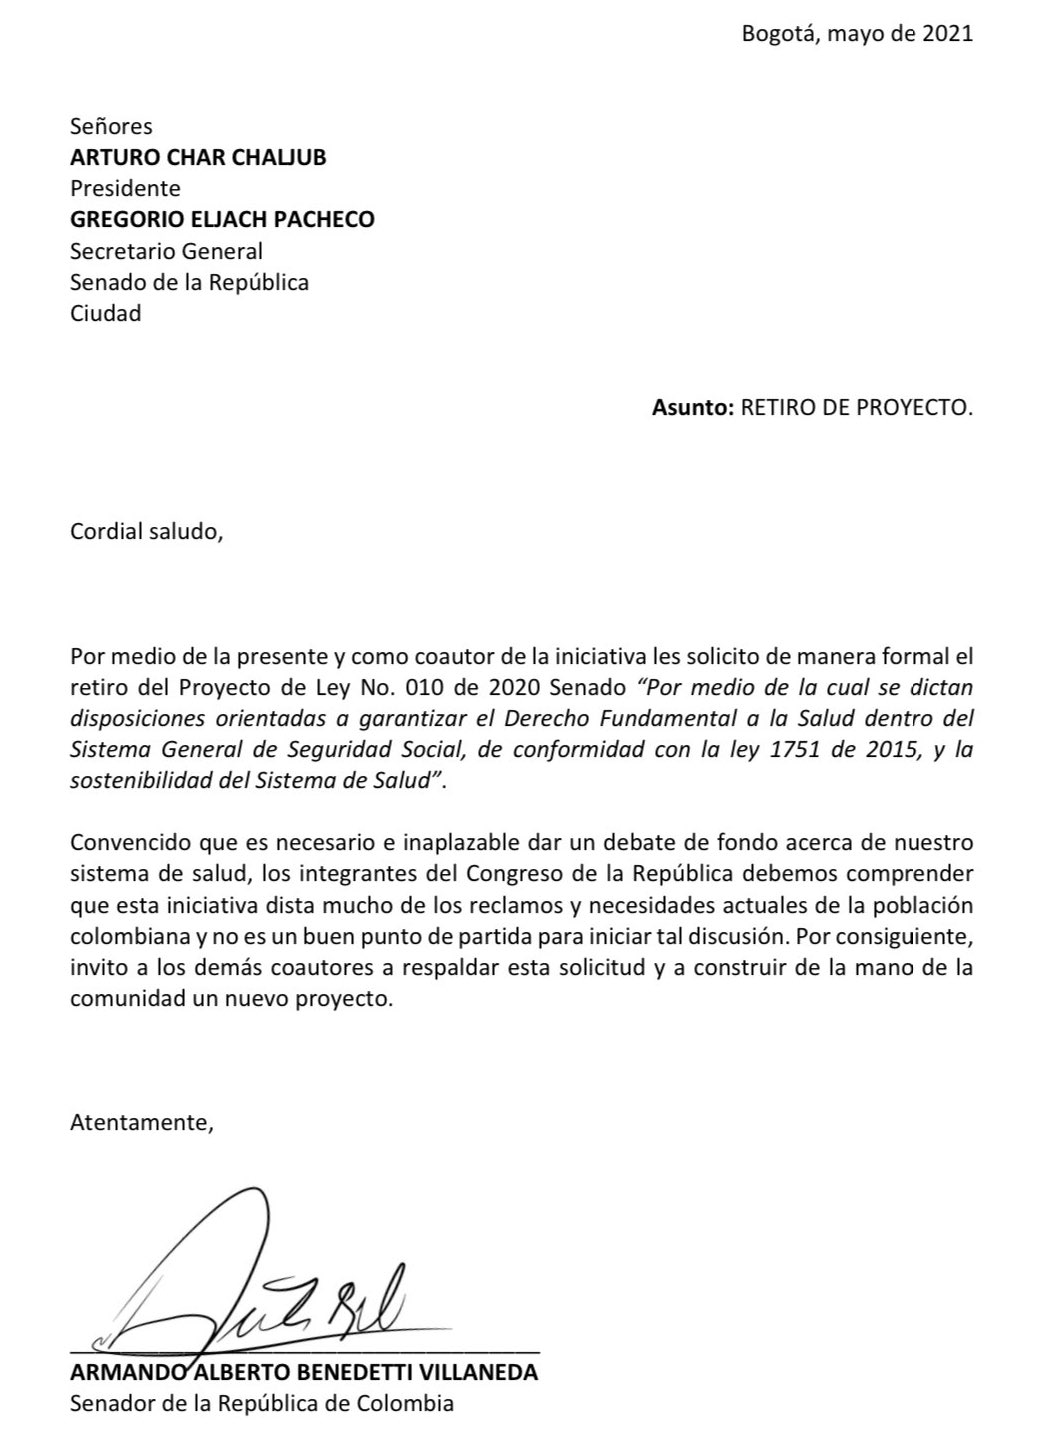 Carta de Armando Benedetti dirigida al Congreso de la República pidiendo el retiro de la reforma de salid. Twitter @AABenedetti